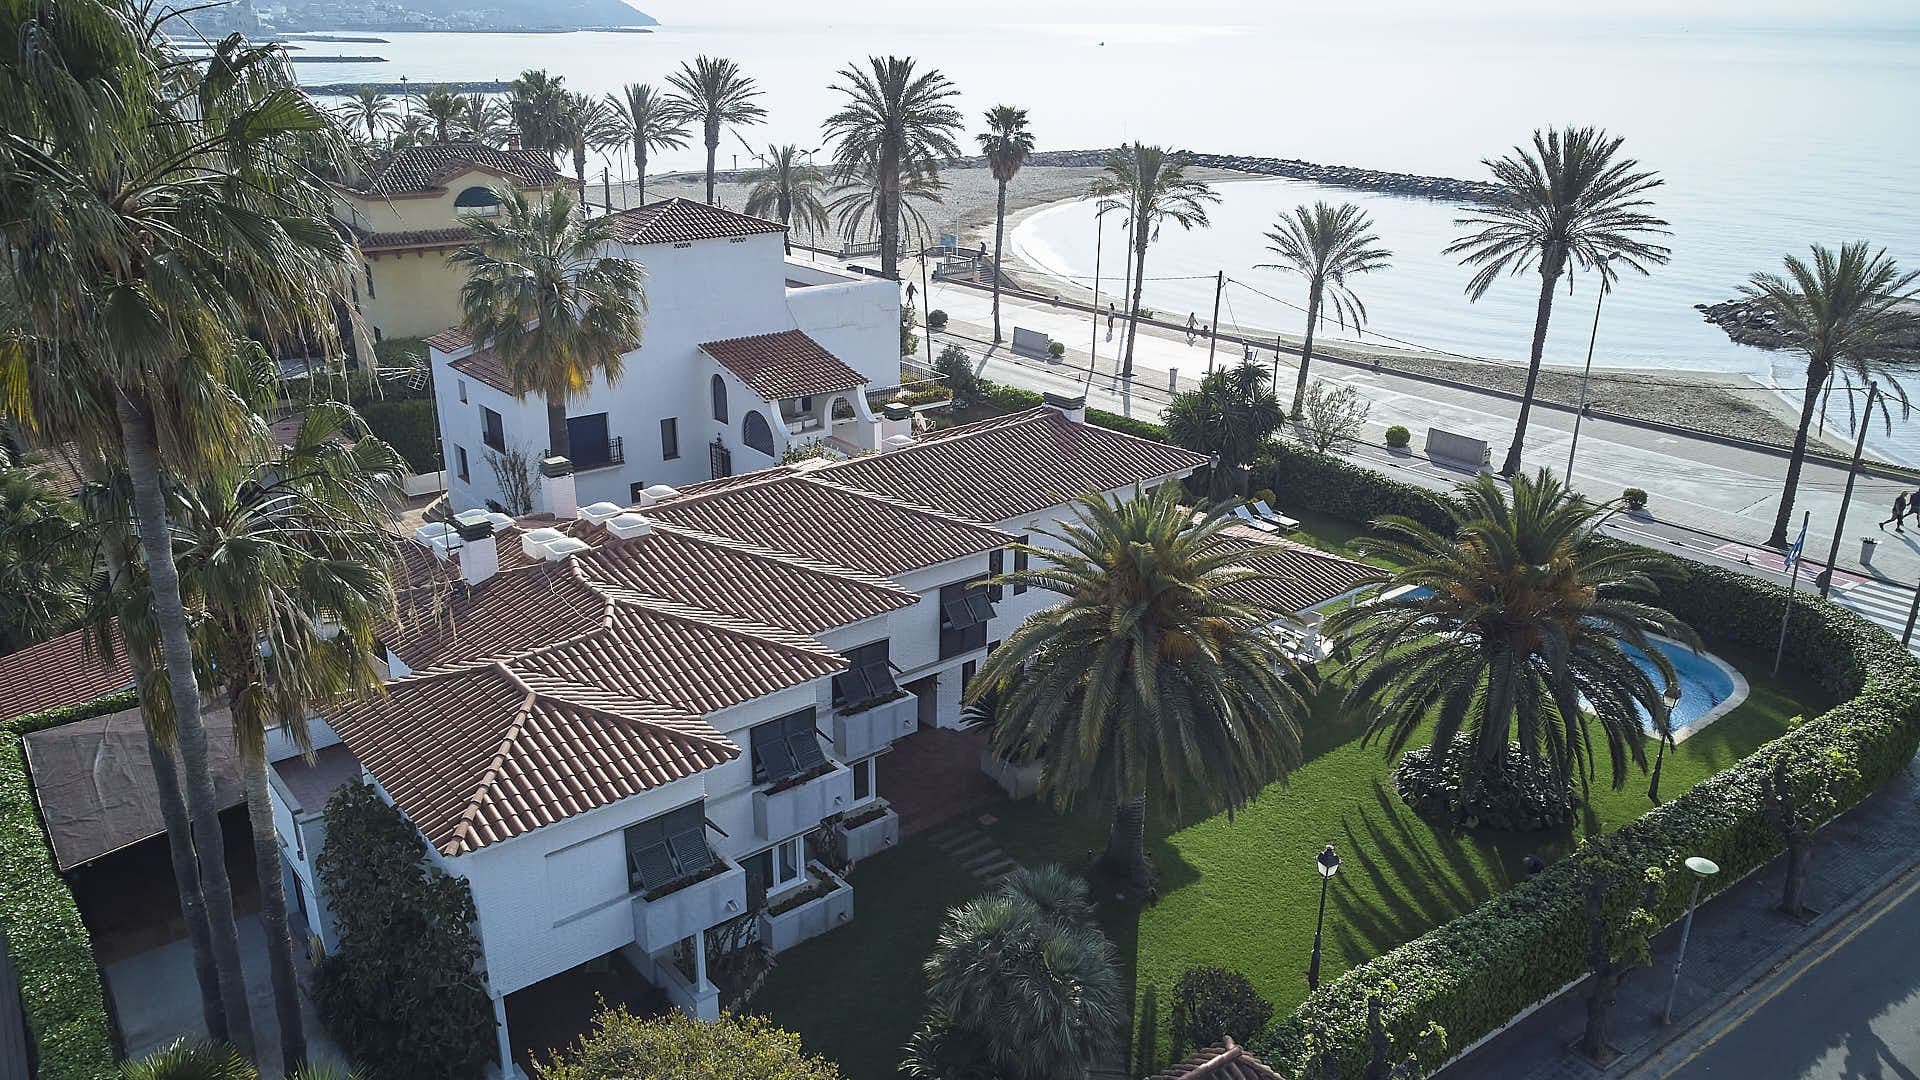 Lujo junto al mar en esta espectacular villa ubicada directamente en la playa de Sitges, Barcelona.